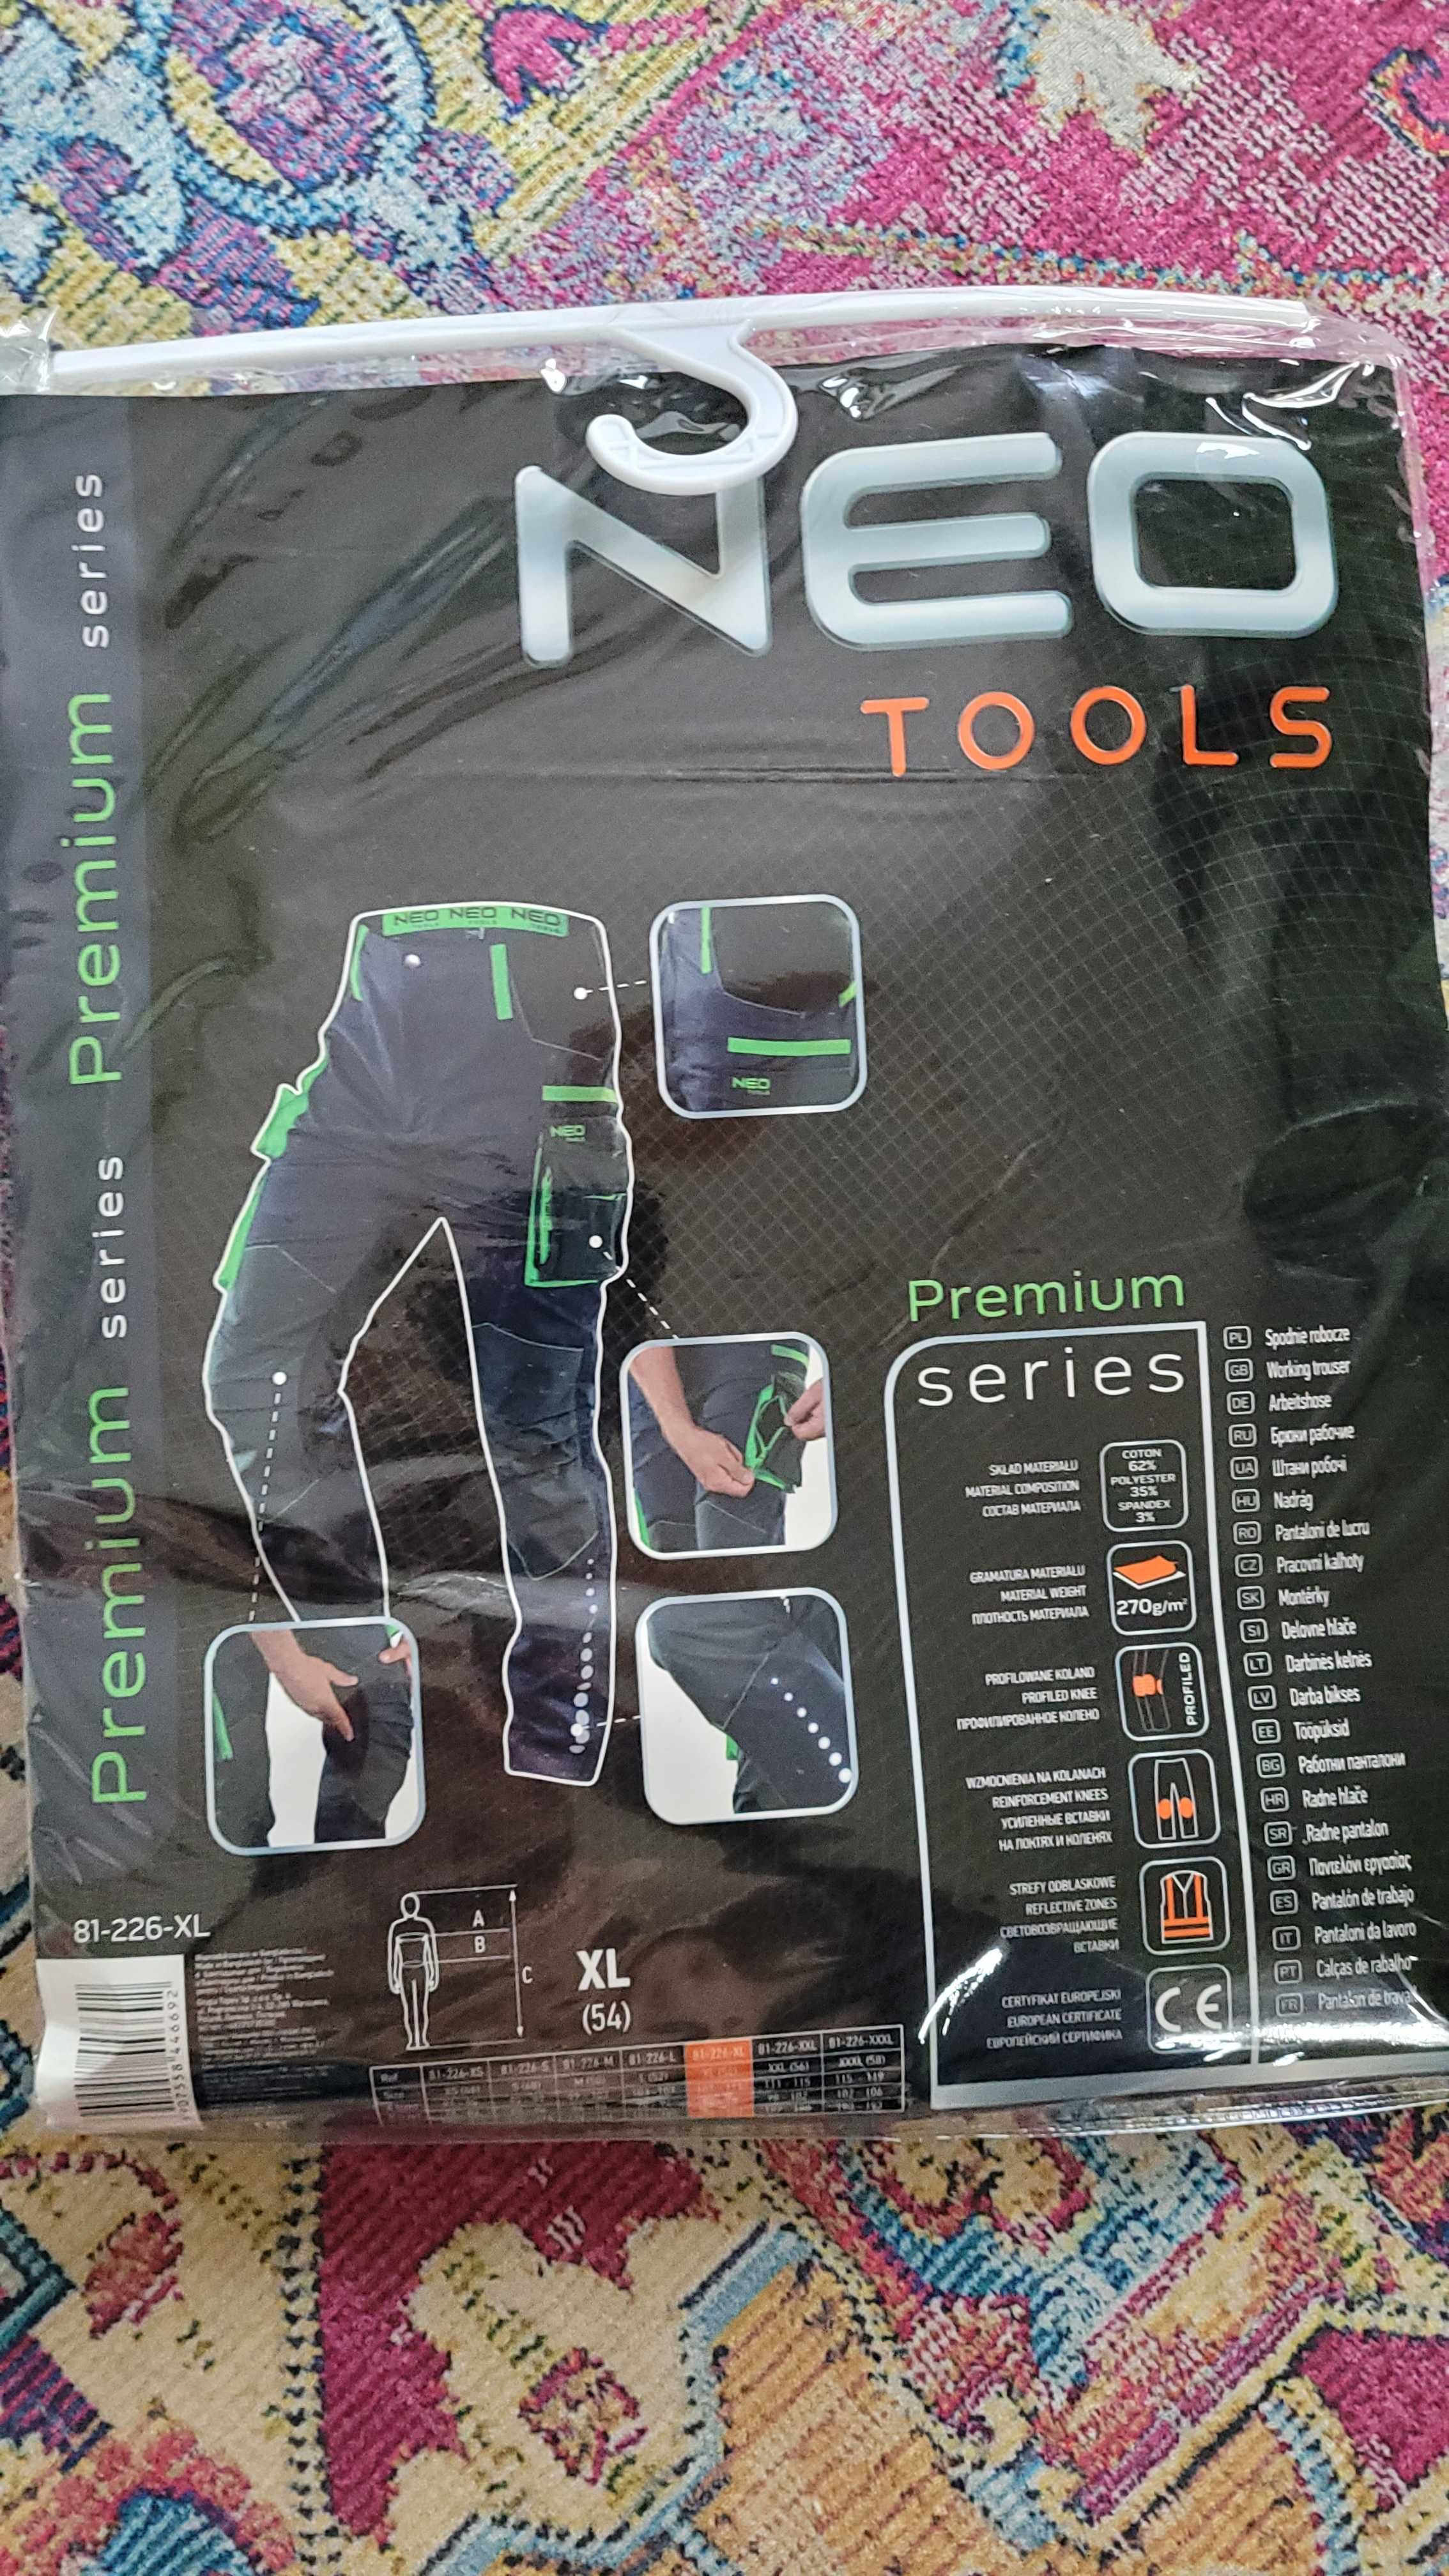 Spodnie robocze neo tools.